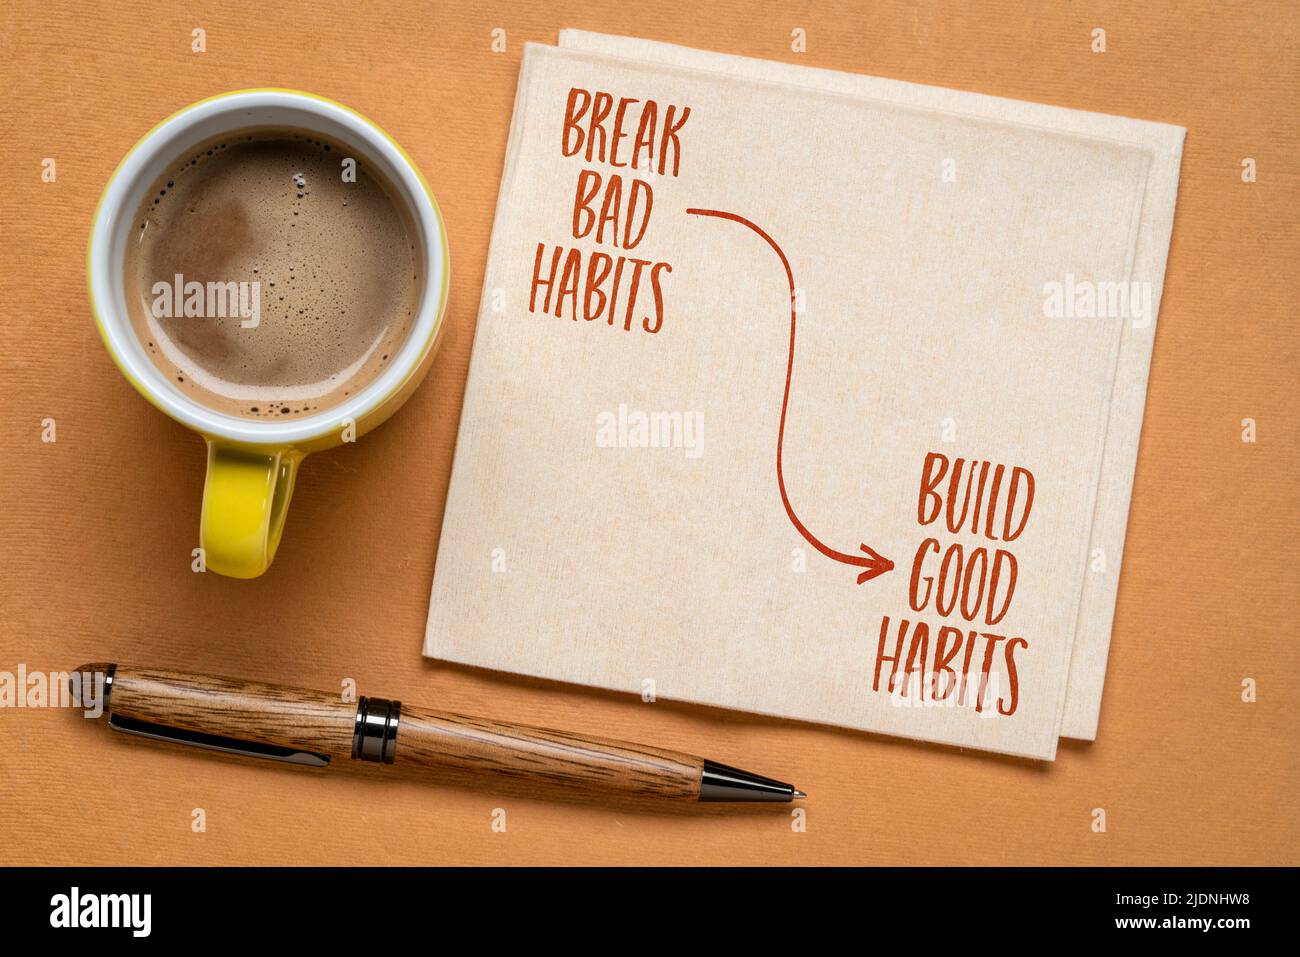 briser les mauvaises habitudes, construire de bonnes habitudes - rappel motivationnel sur une serviette avec une tasse de café, concept d'auto-développement Banque D'Images